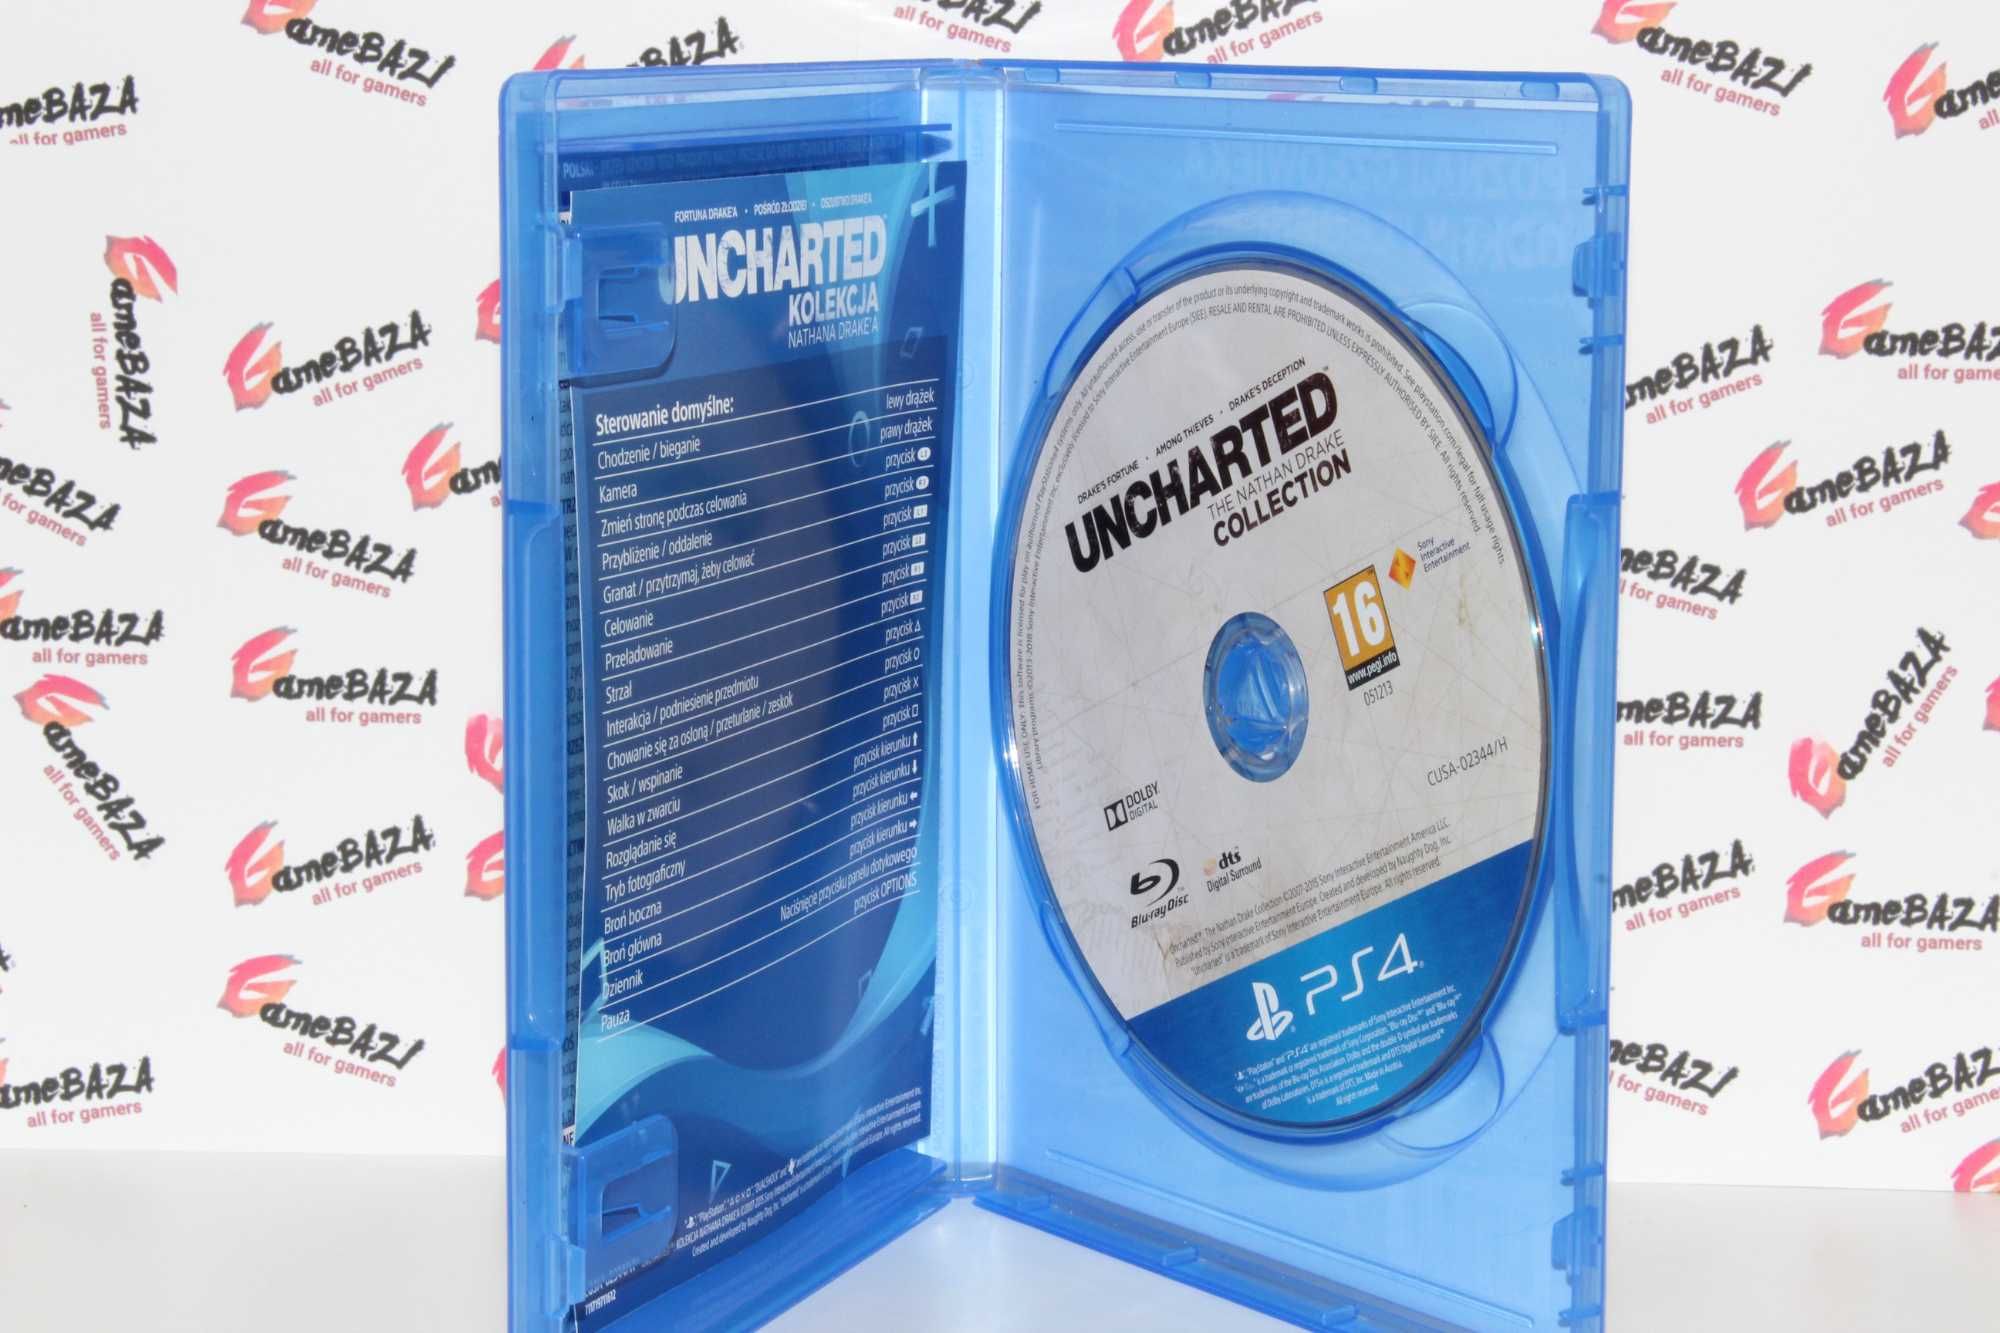 PL Uncharted Kolekcja Ps4 GameBAZA